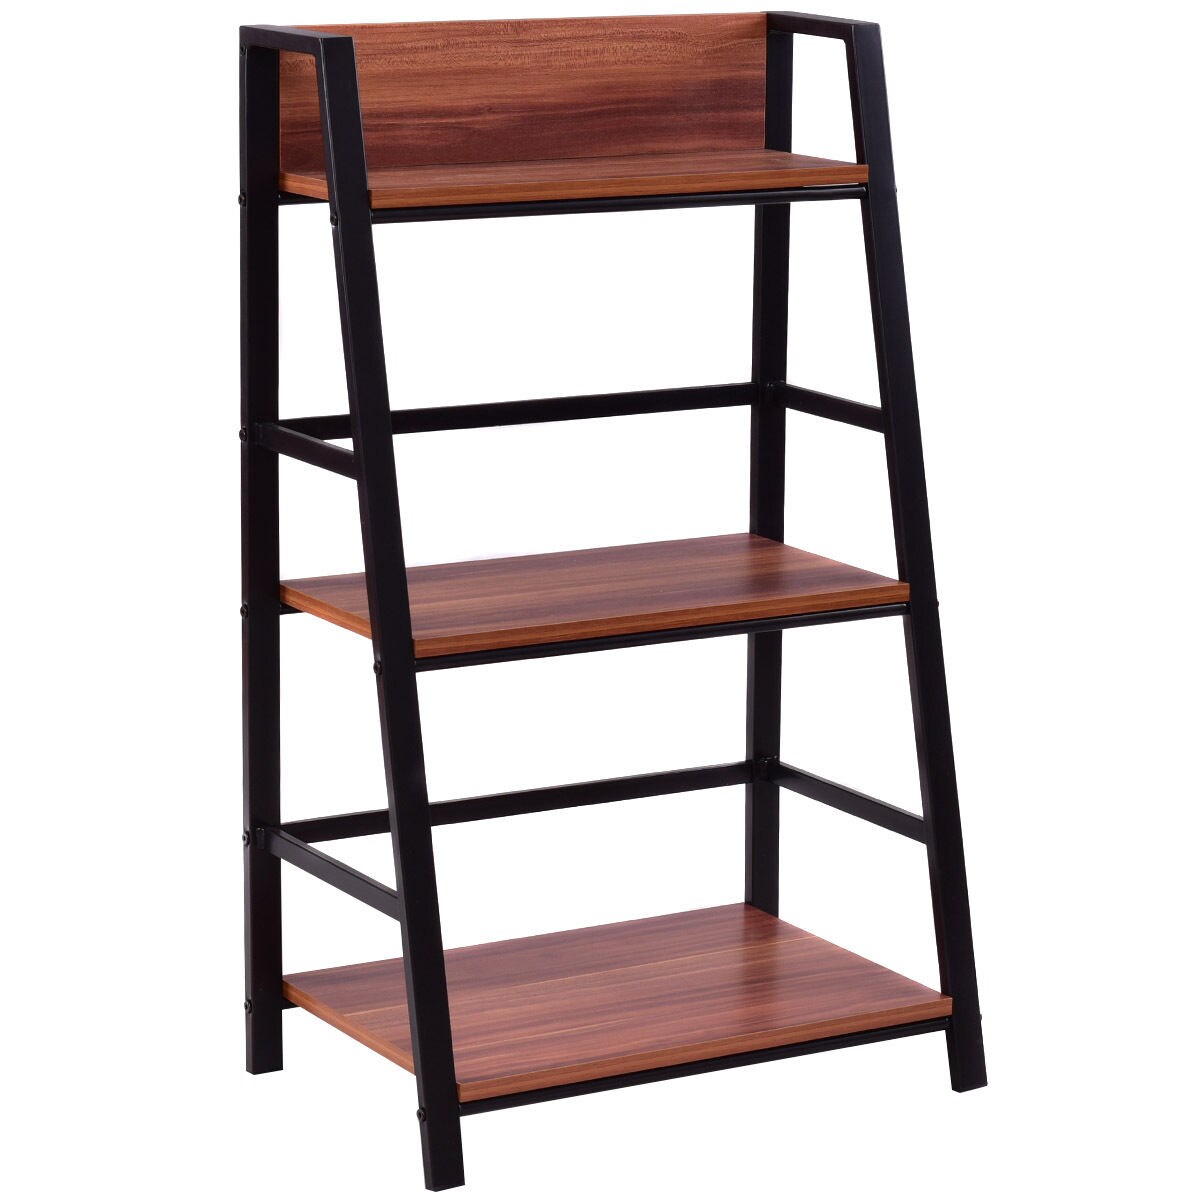 3 Tier kids bookshelf ladder storage toy book storage sturdy MDF plywood display 